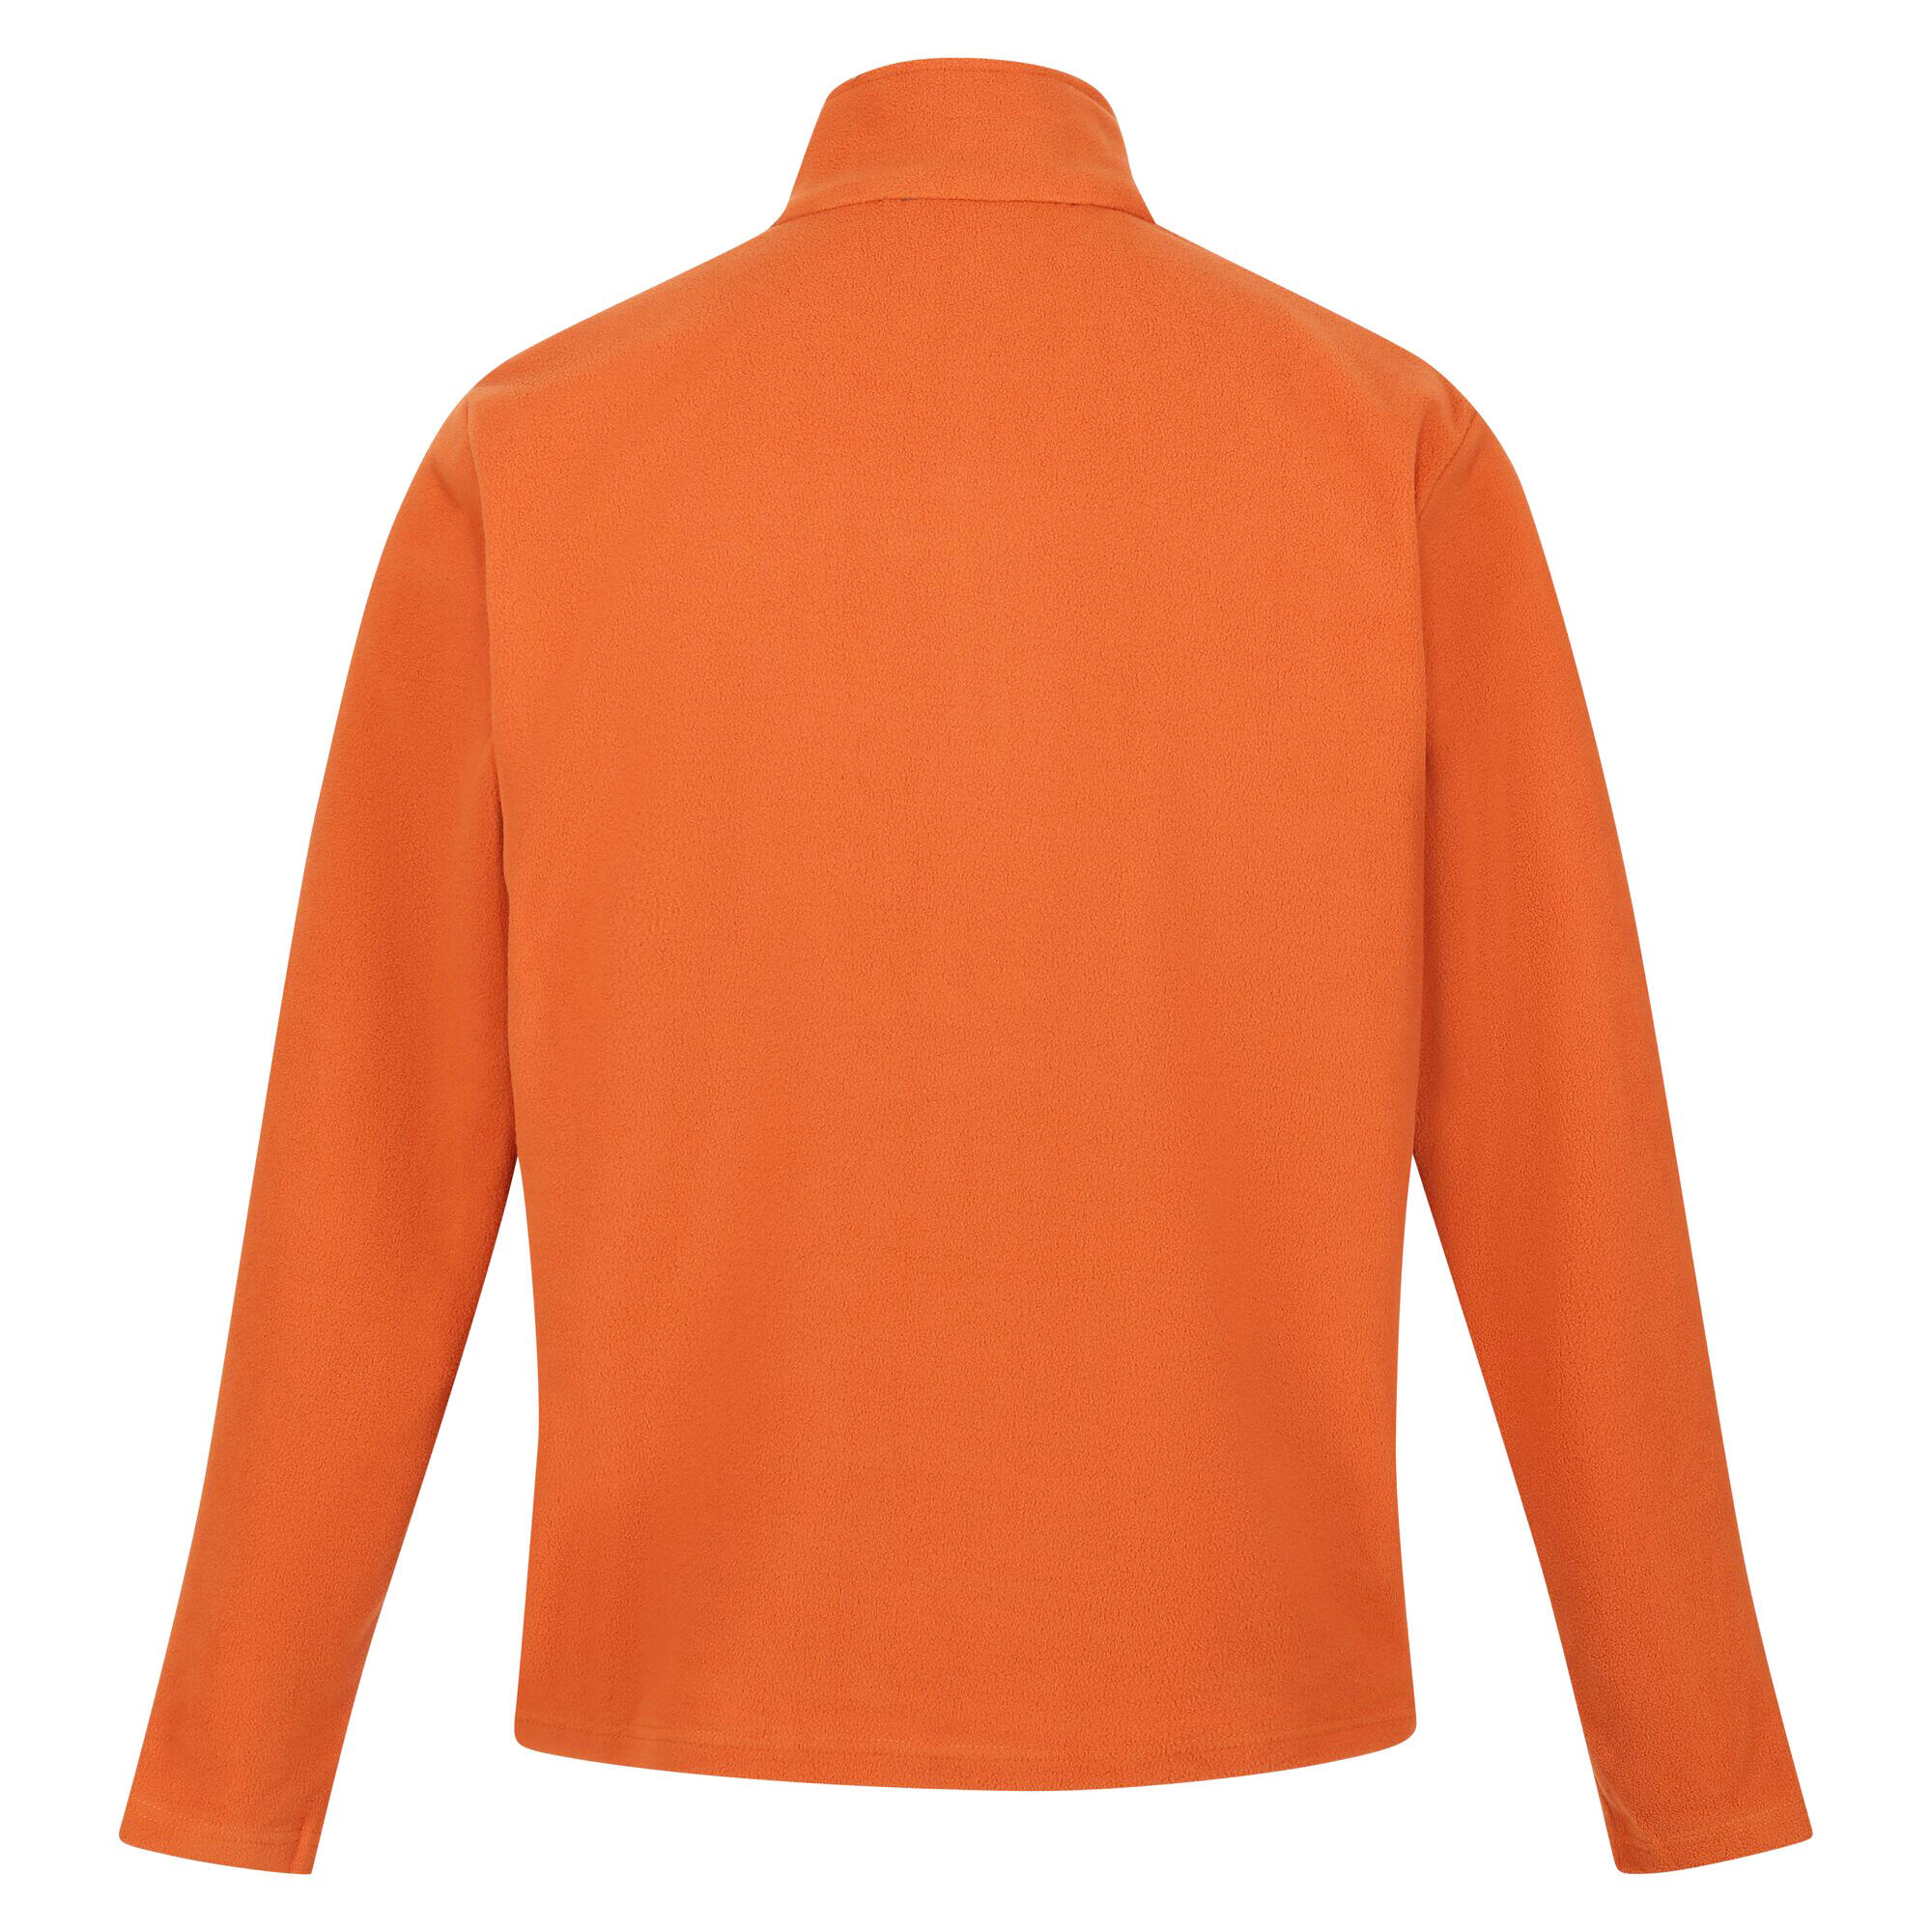 Great Outdoors Mens Thompson Half Zip Fleece Top (Burnt Orange) 2/5